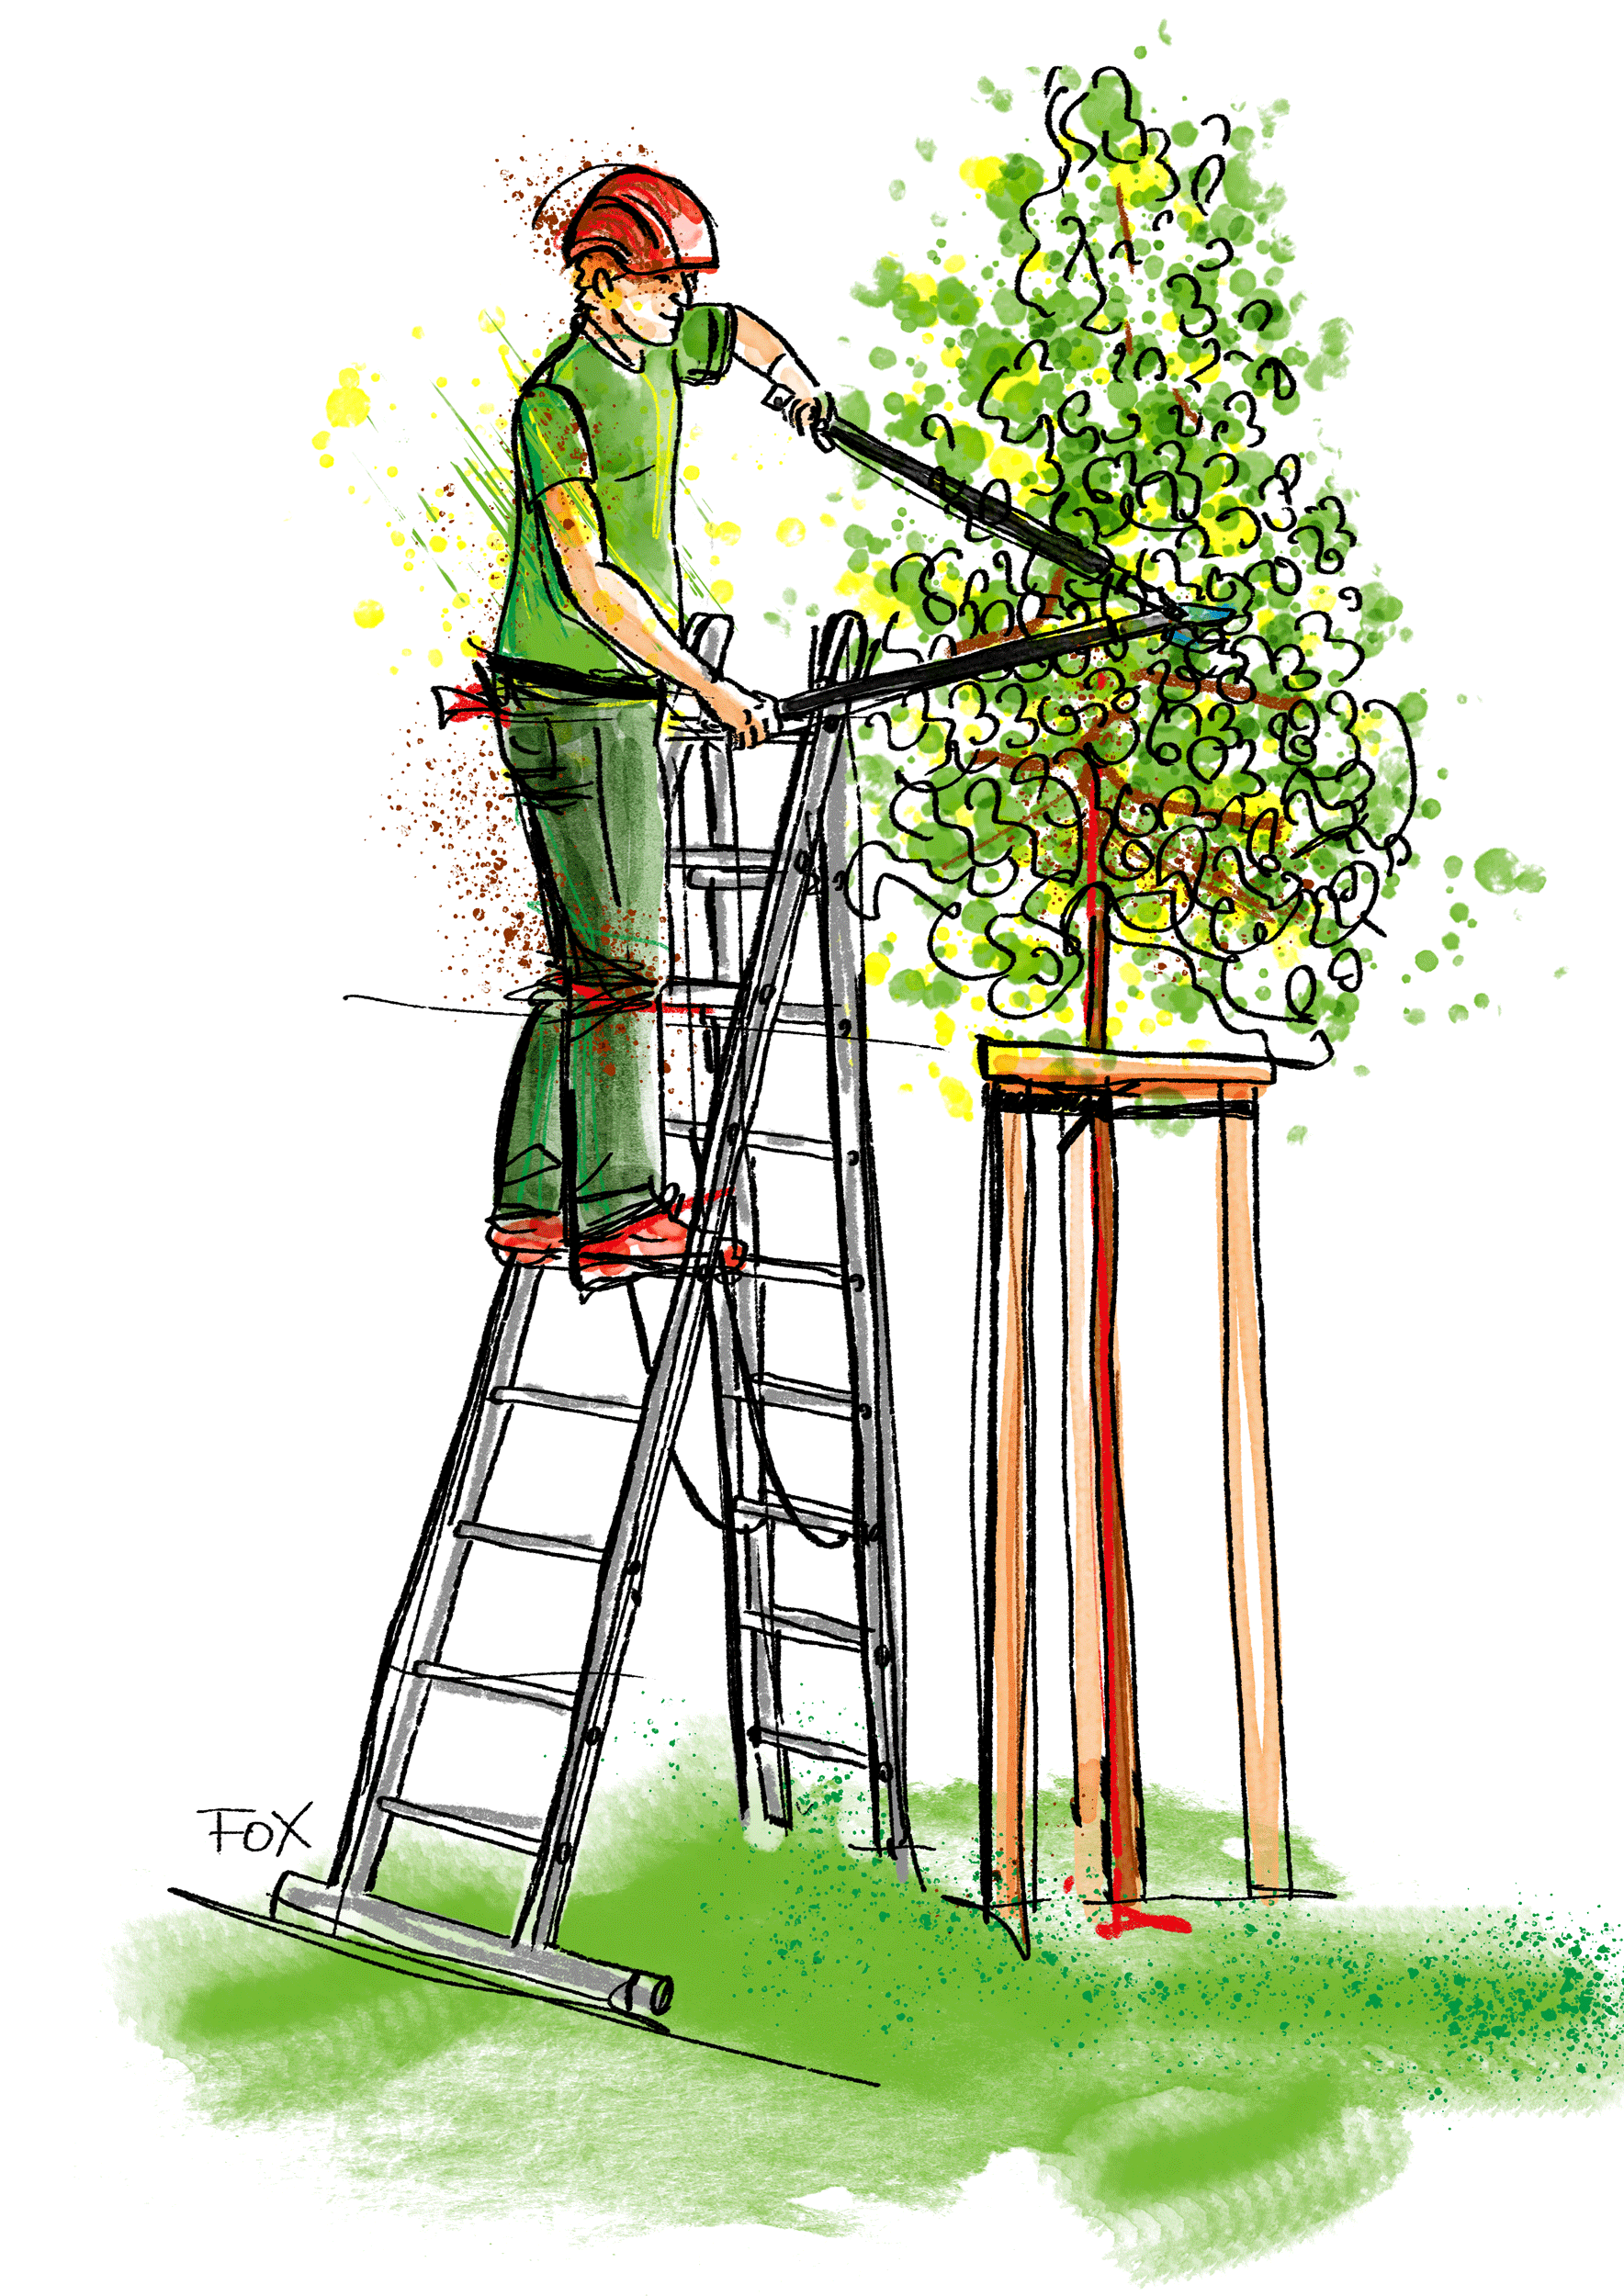 Baumfloh – Der Profi für Baumpflege aus dem Hochschwarzwald